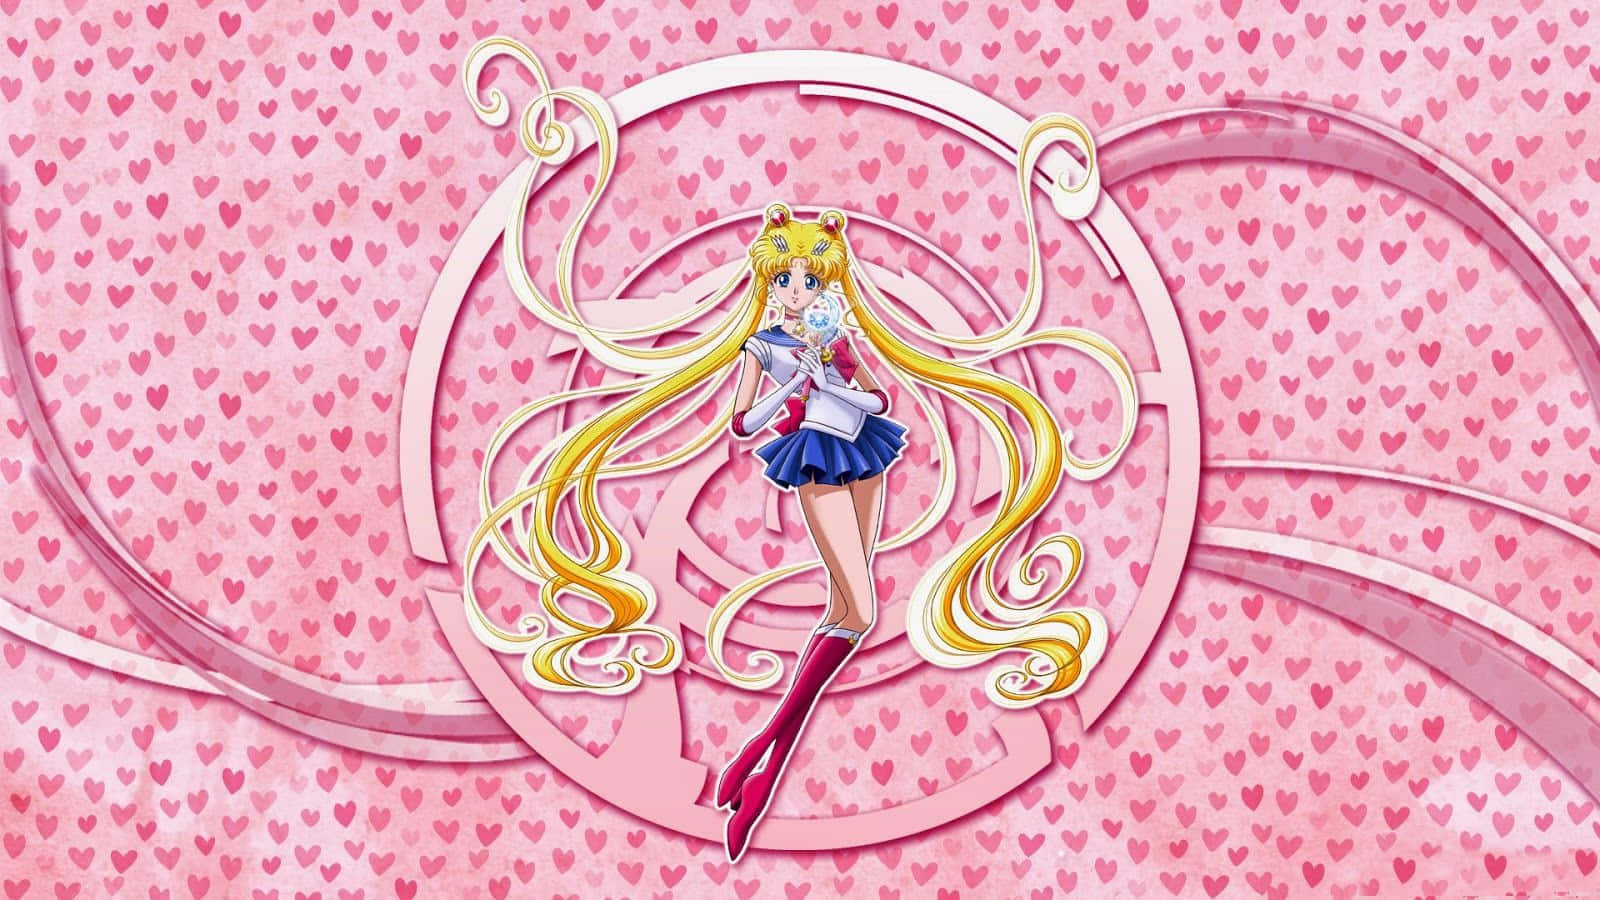 Laprotagonista Dell'iconico Anime Di Sailor Moon Ottiene Un Aggiornamento Estetico. Sfondo